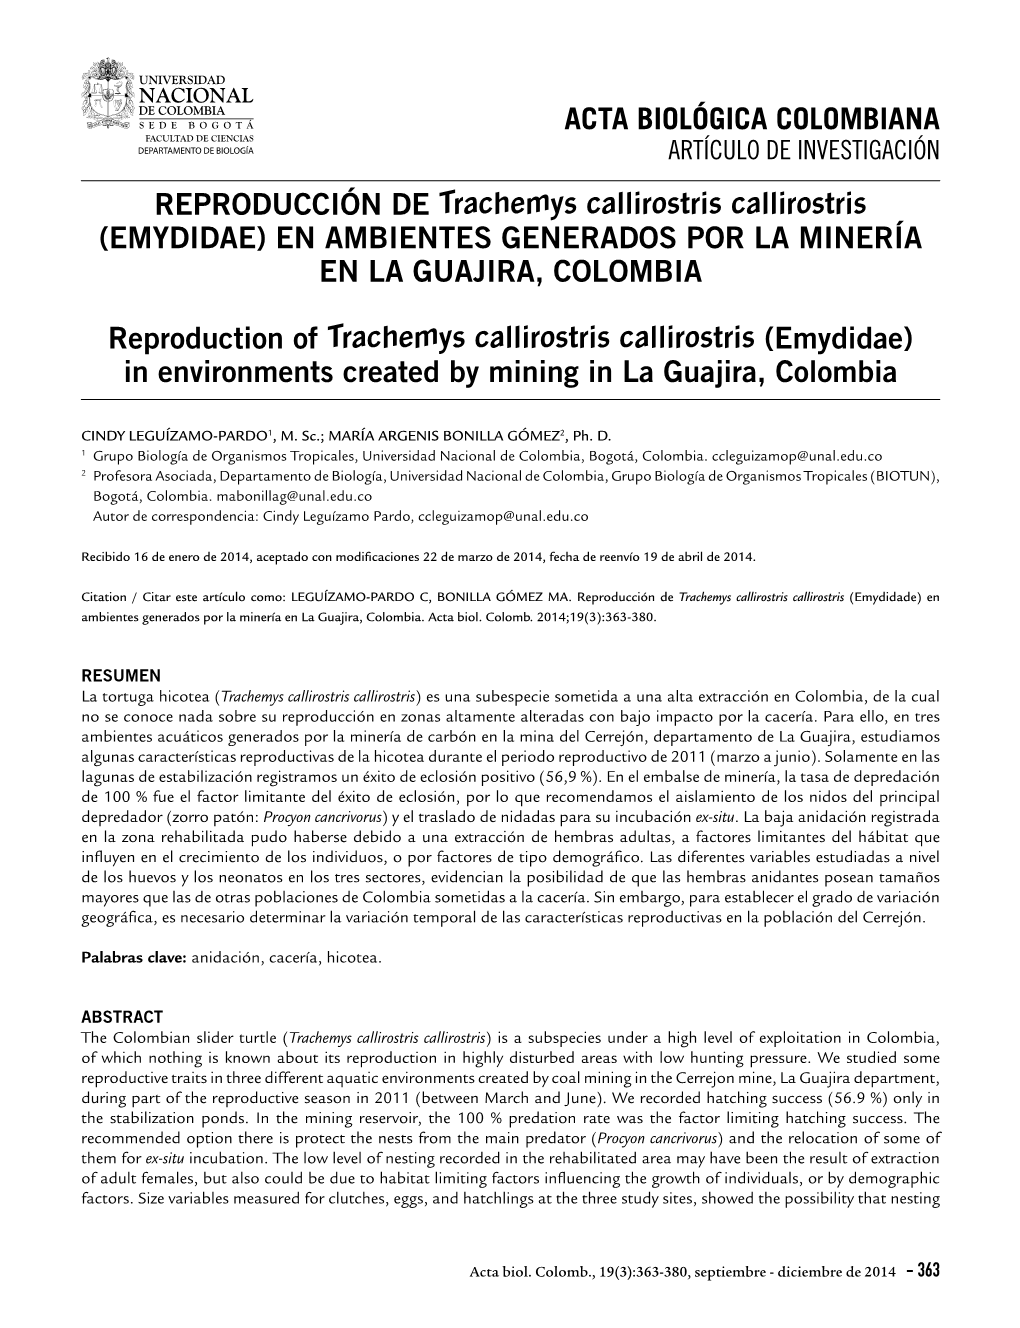 REPRODUCCIÓN DE Trachemys Callirostris Callirostris (EMYDIDAE) EN AMBIENTES GENERADOS POR LA MINERÍA EN LA GUAJIRA, COLOMBIA